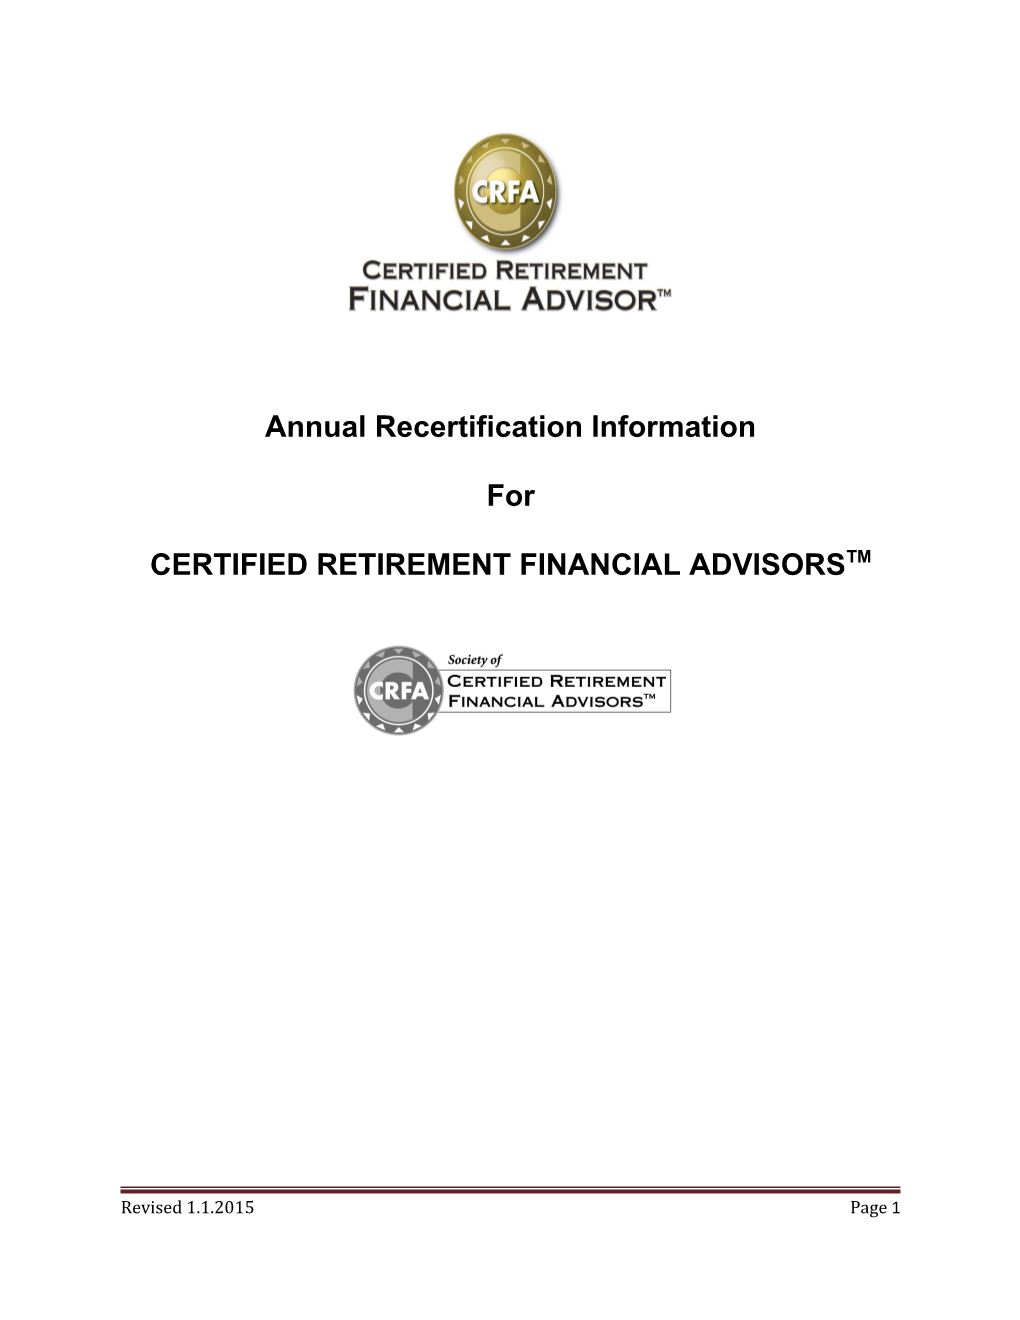 Certified Retirement Financial Advisorstm